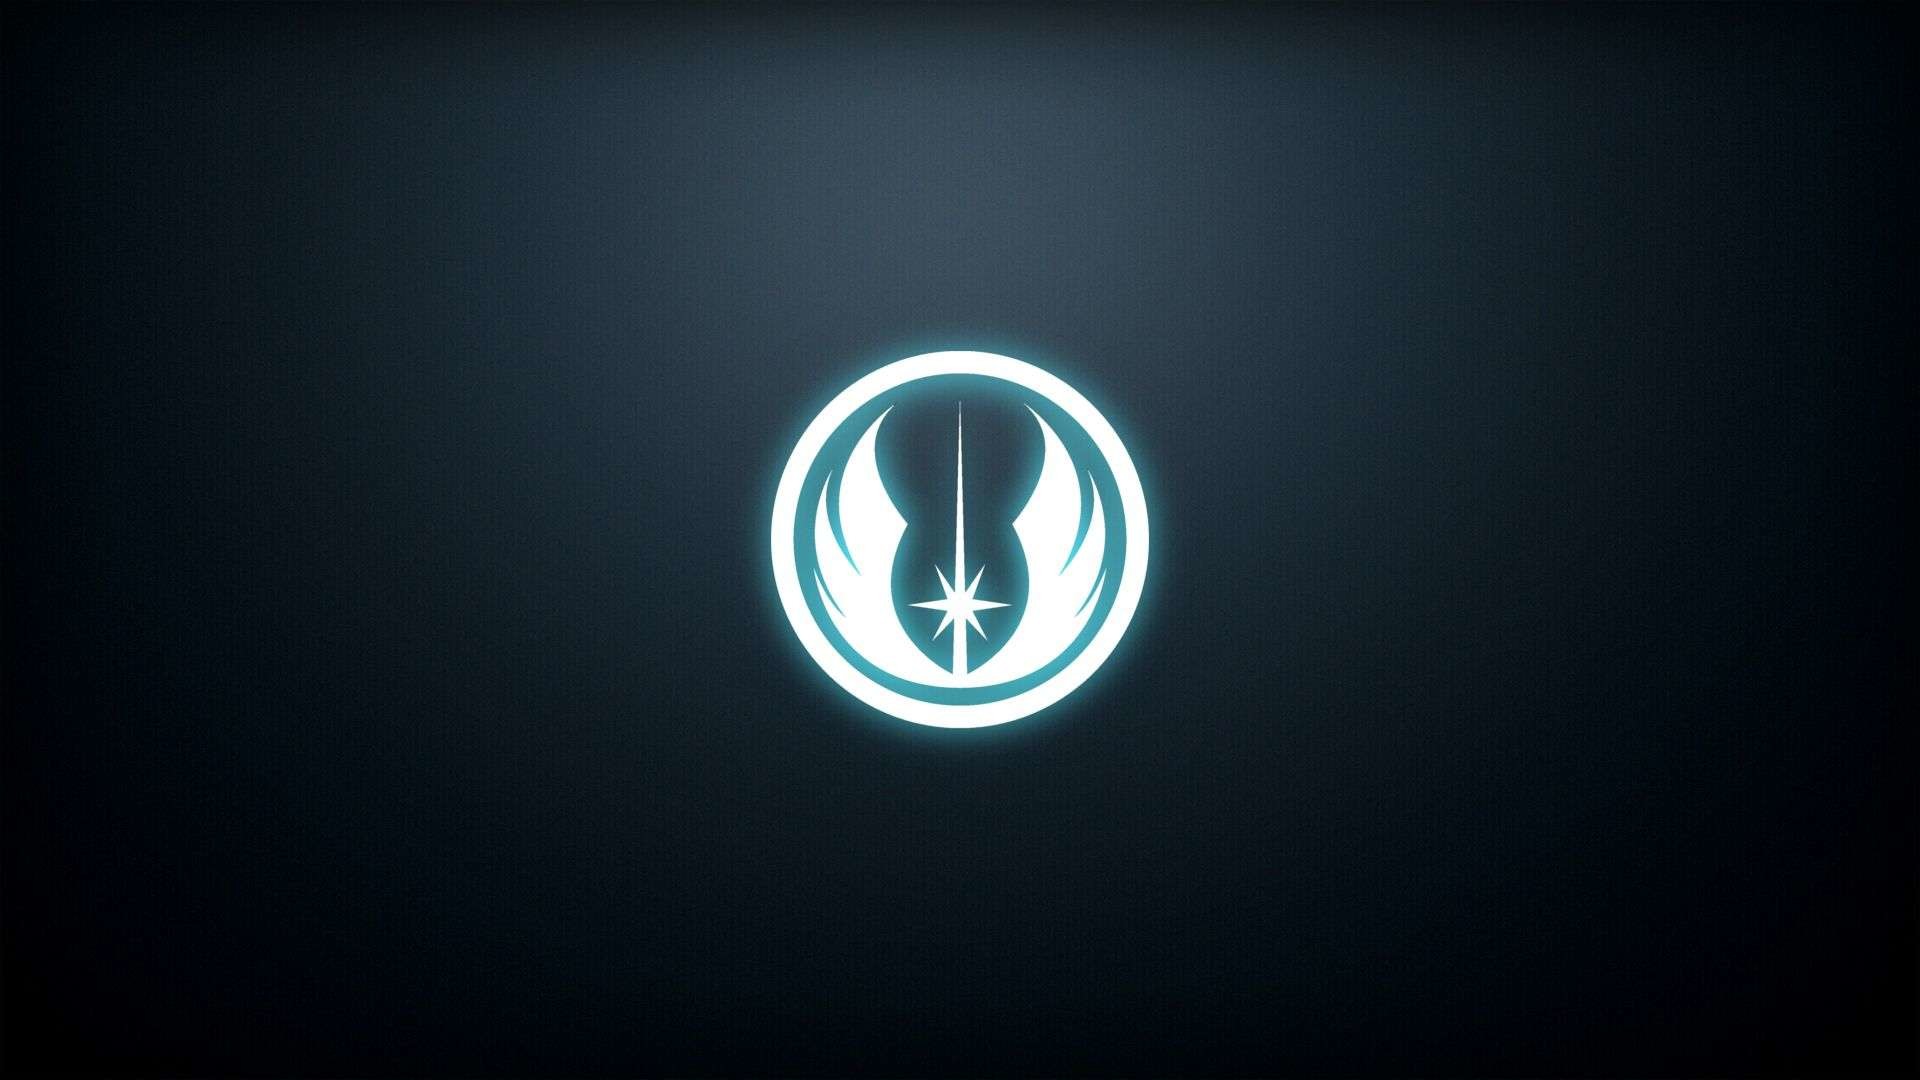 Star wars jedi symbol wallpaper